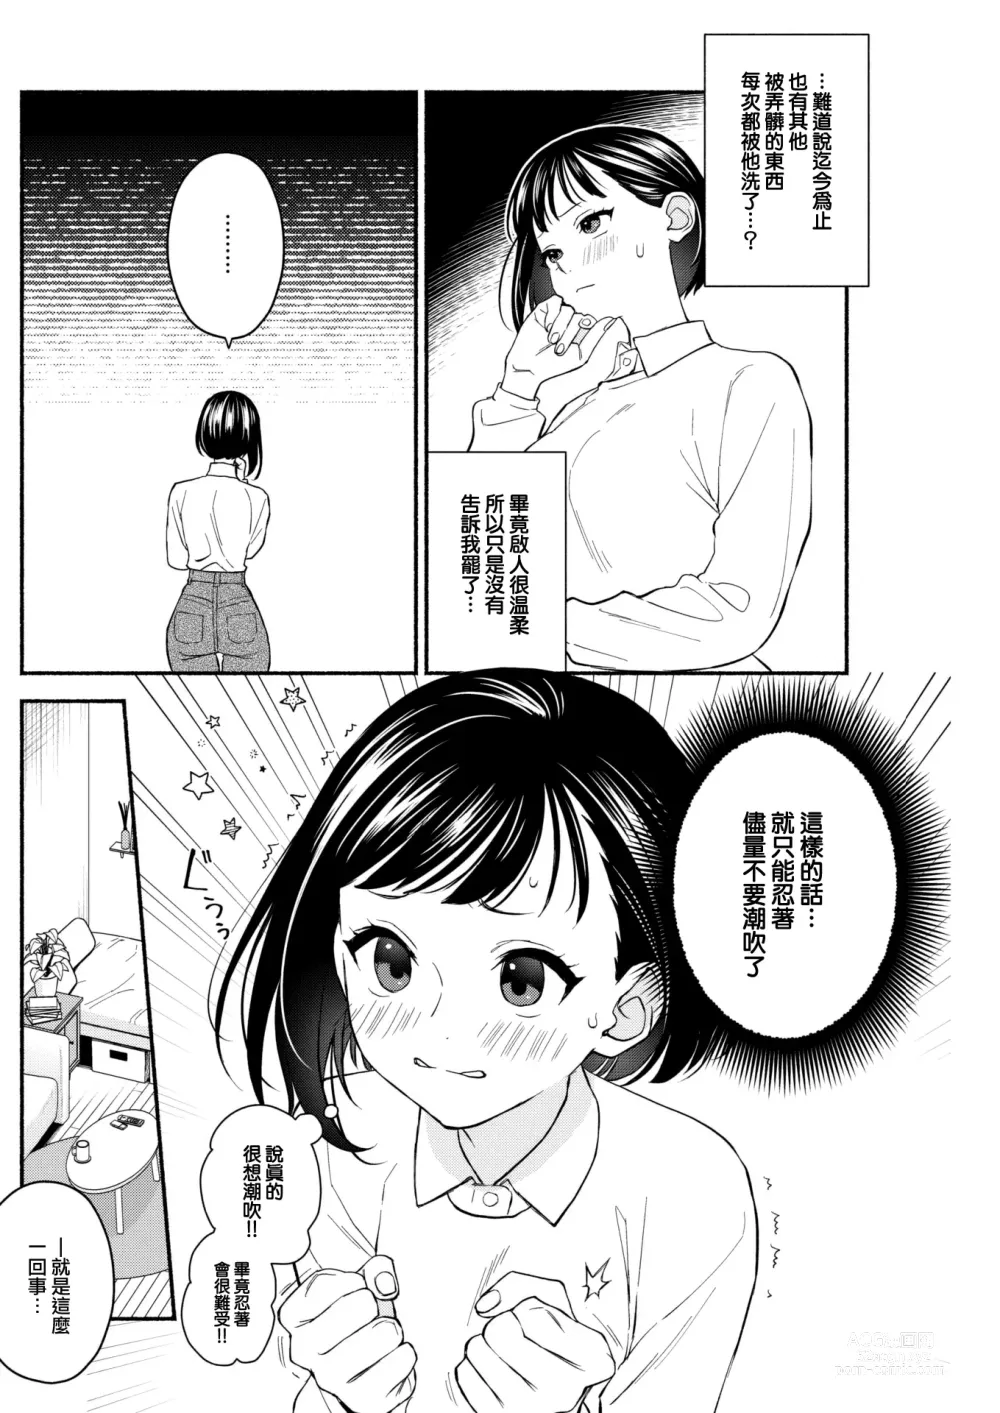 Page 7 of manga Gaman Dekirumon!